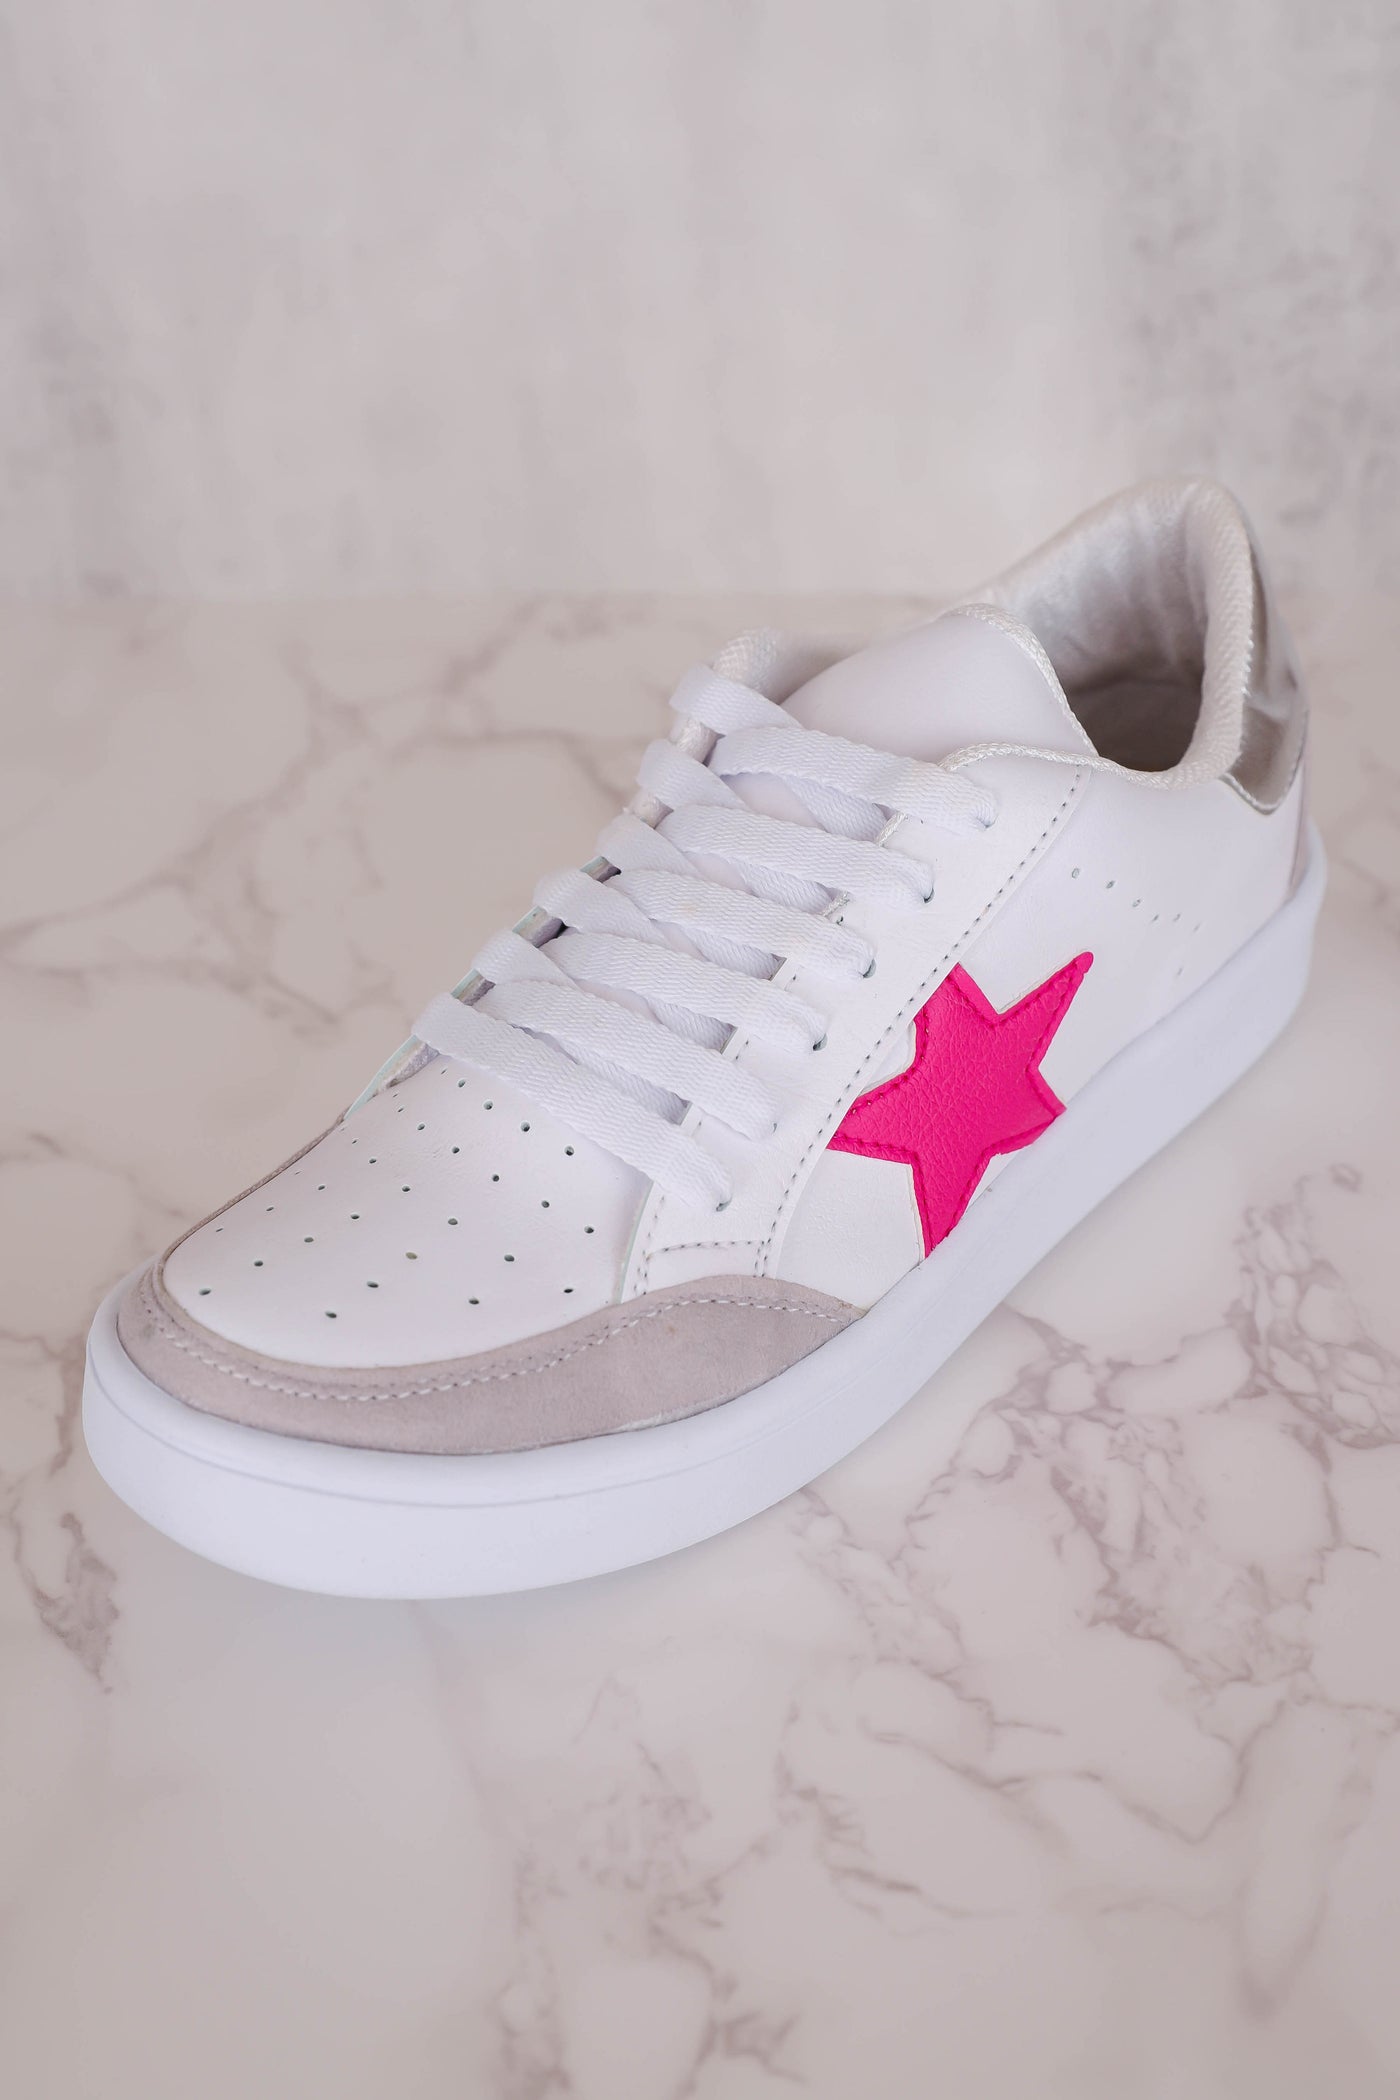 Trendy Star Sneakers- Women's Platform Star Sneakers- Pink Star Sneakers